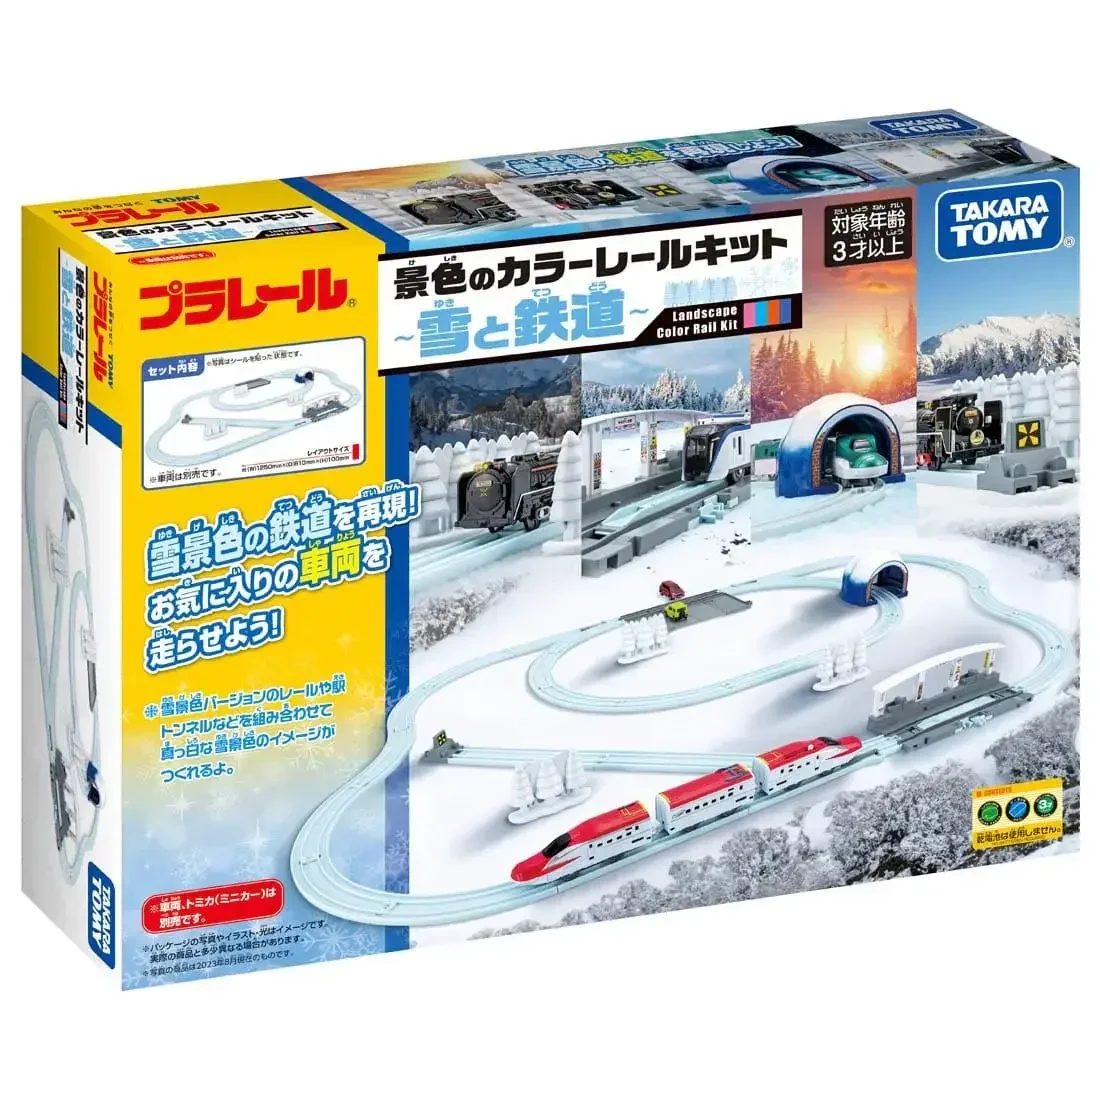 

Takara Tomy Tomica Plarail Seasonal Rail Kit Winter -Snow & Railroads- Toys Kids Xmas Gift Toys for Boys